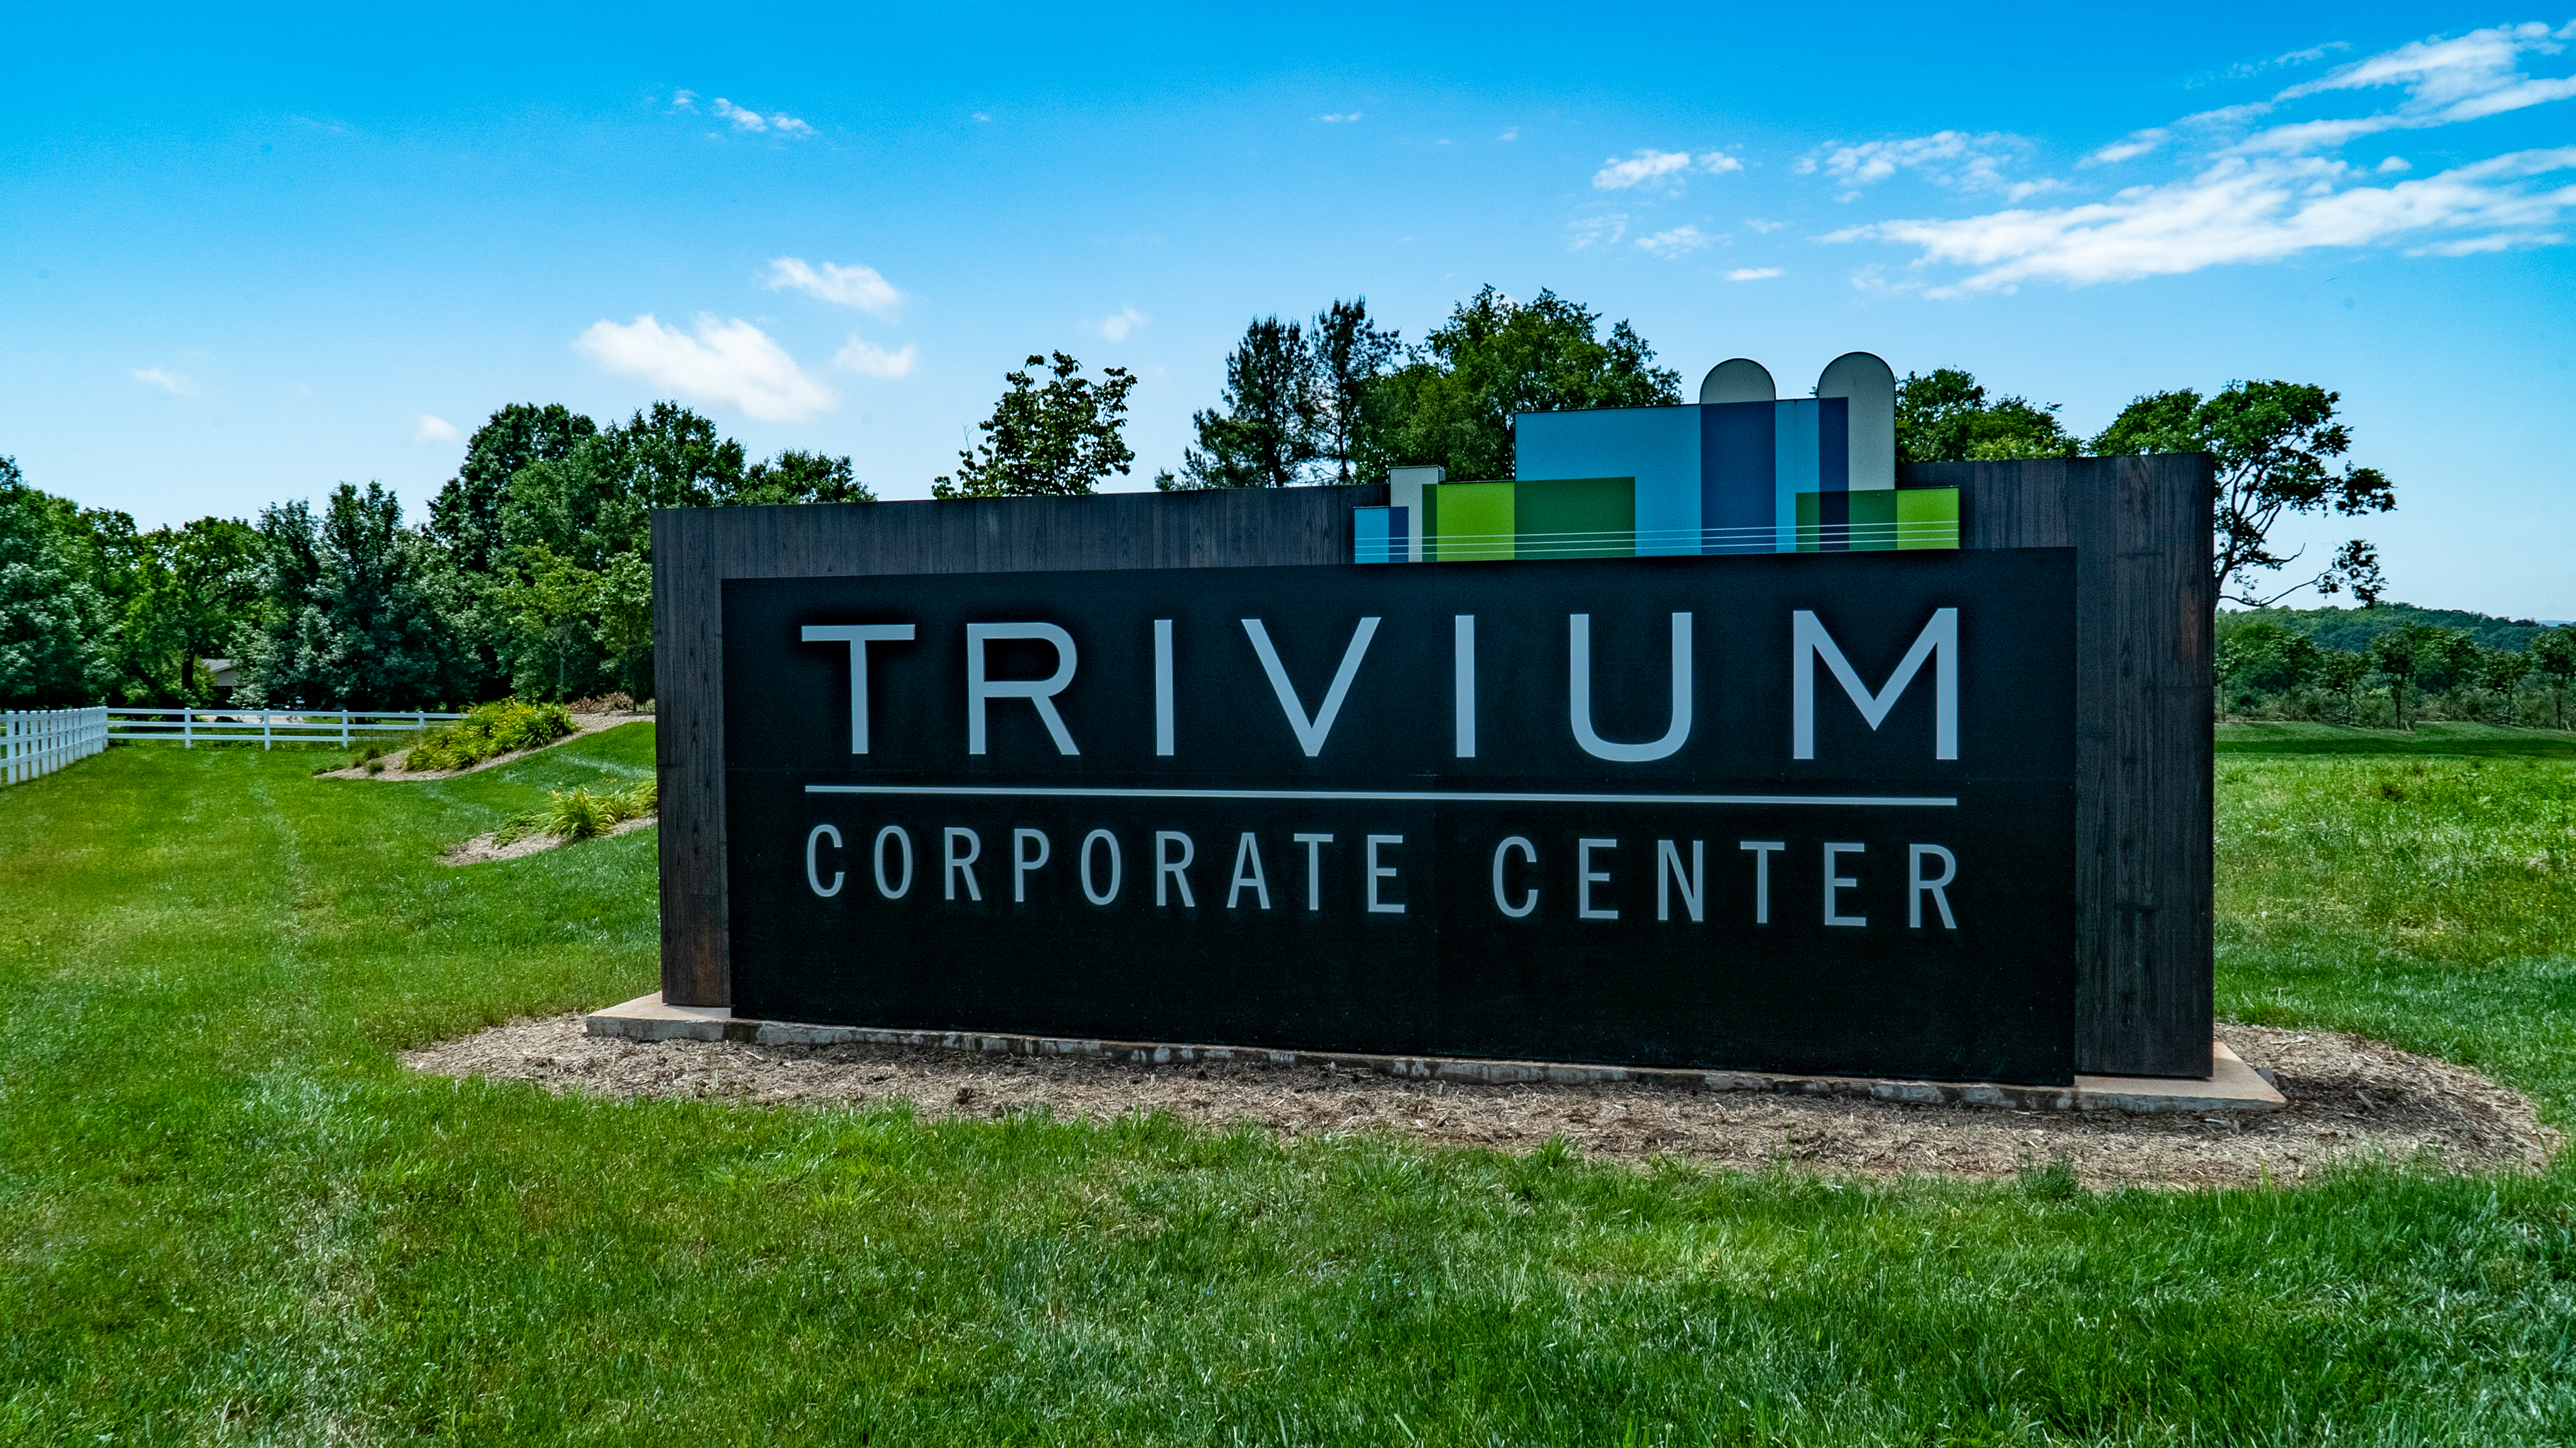 Trivium Corporate Center entrance